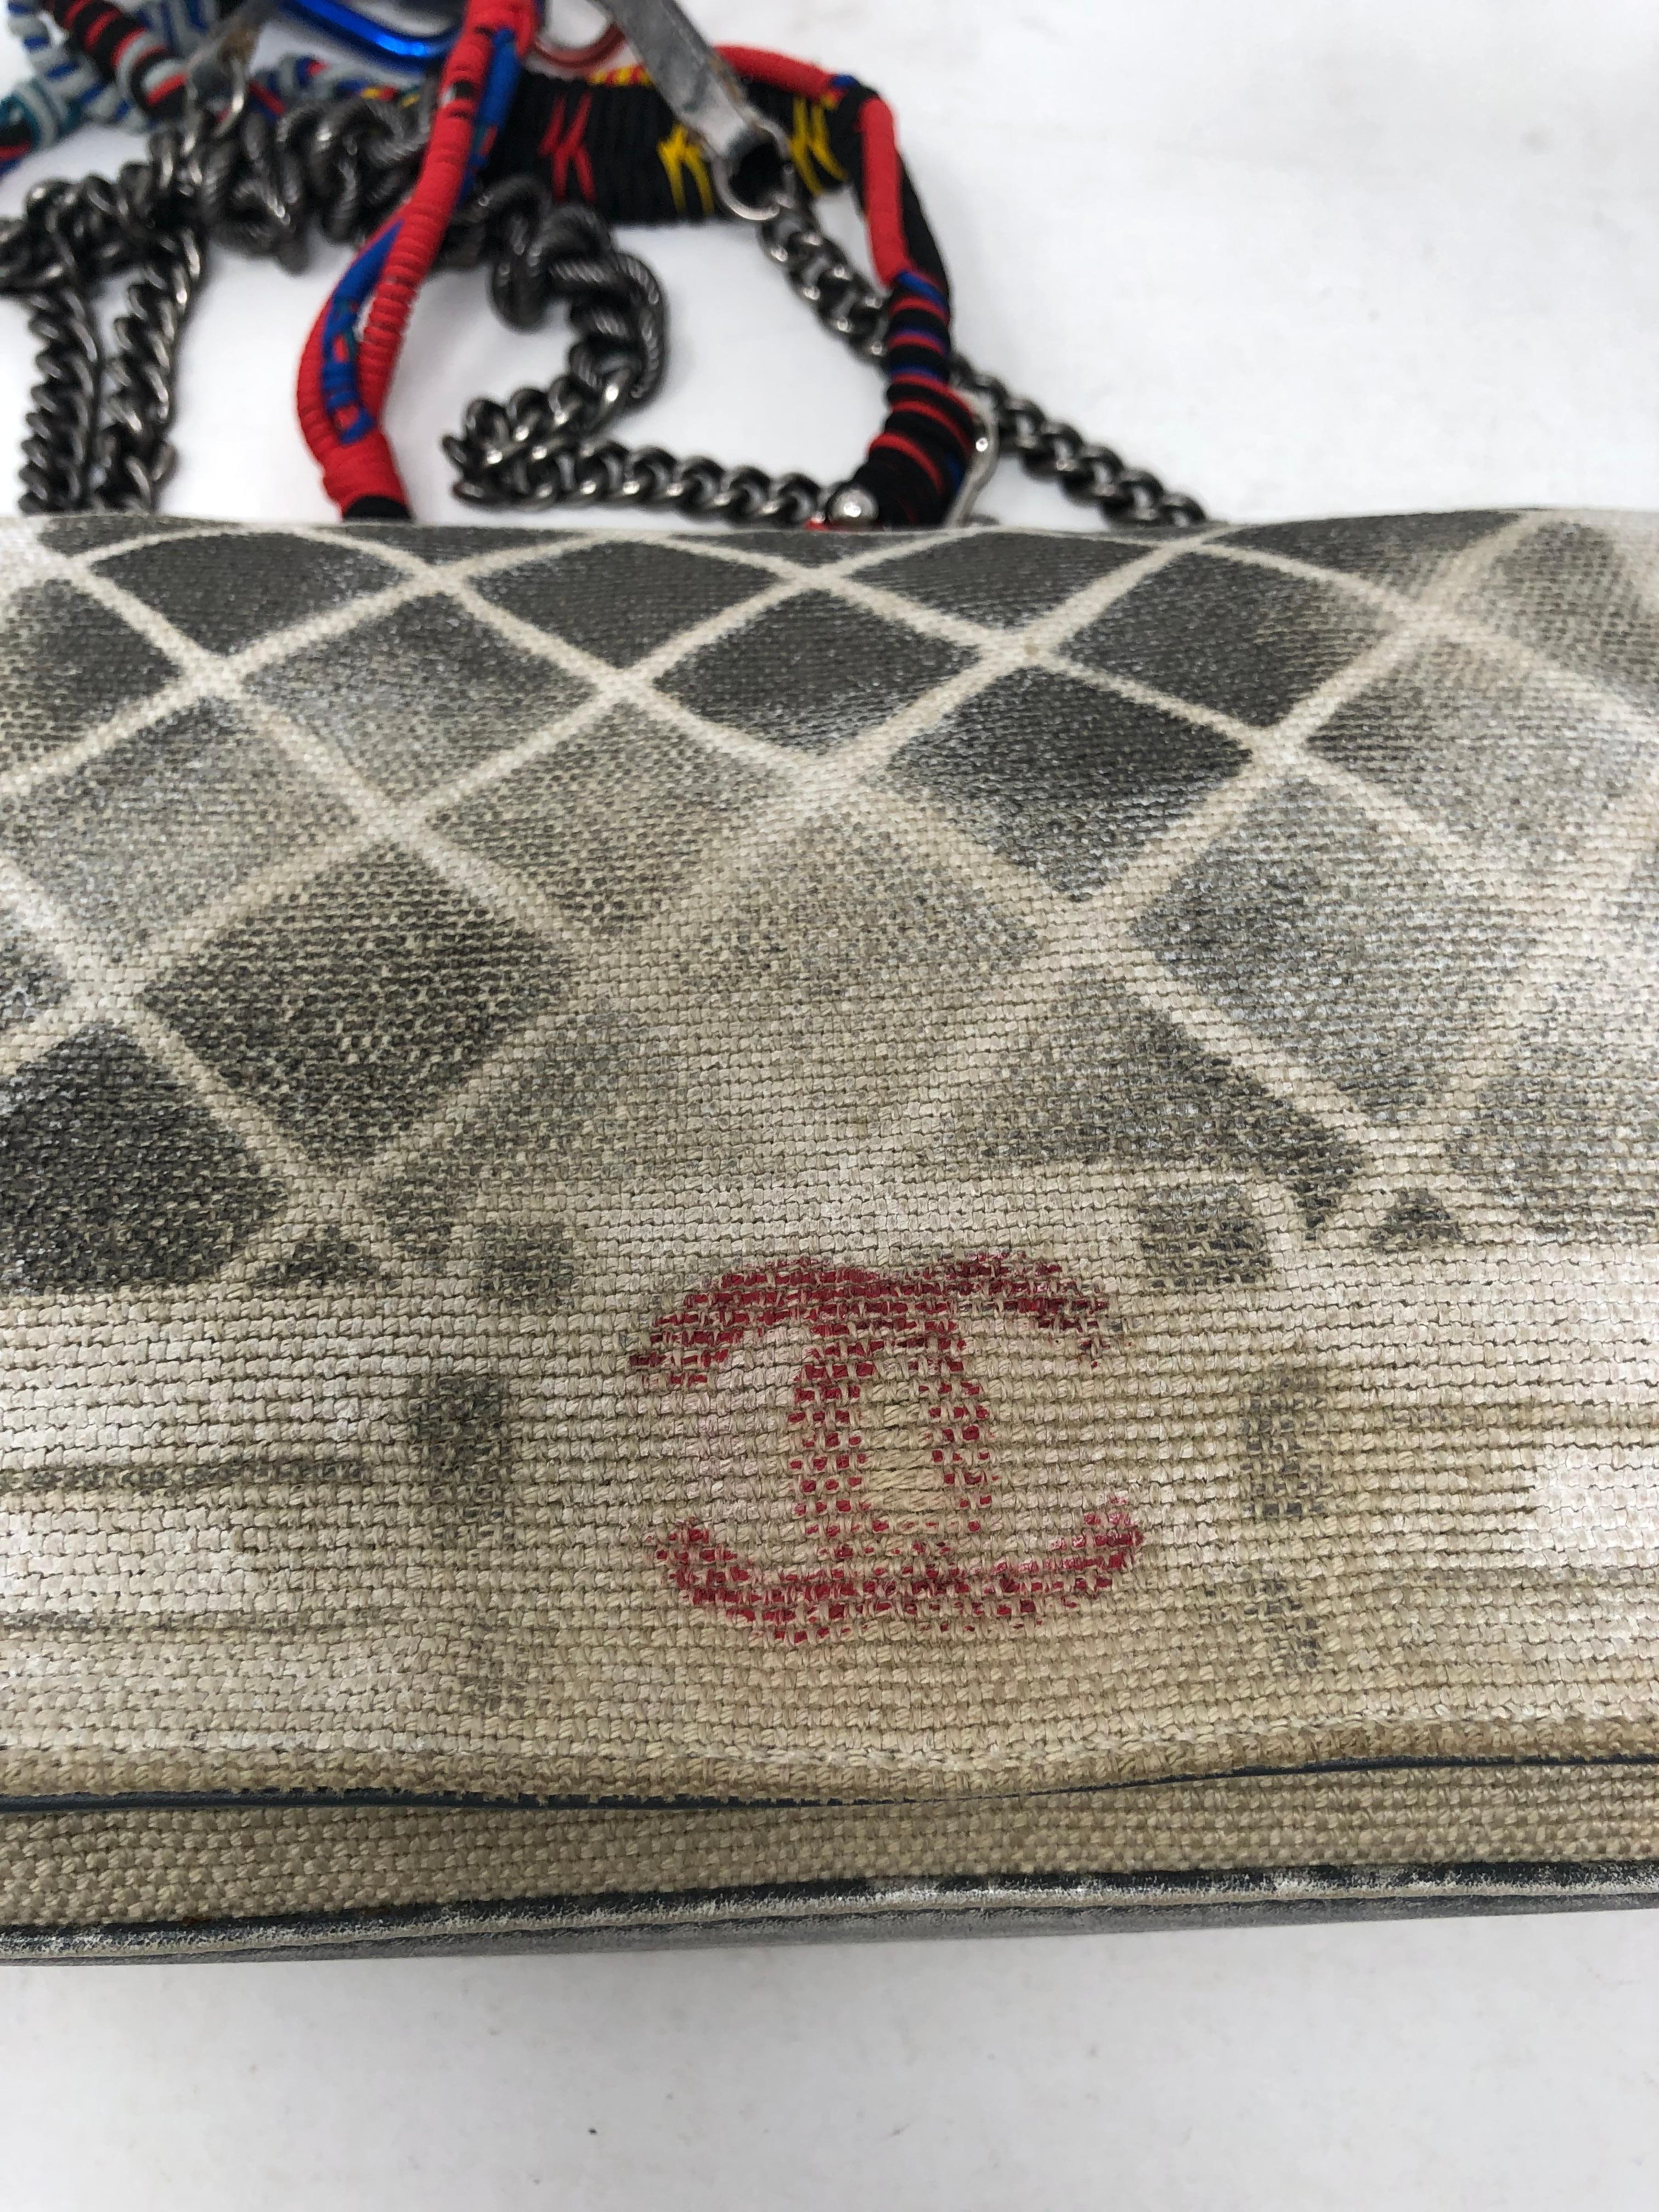 Women's or Men's Chanel Graffiti Bag